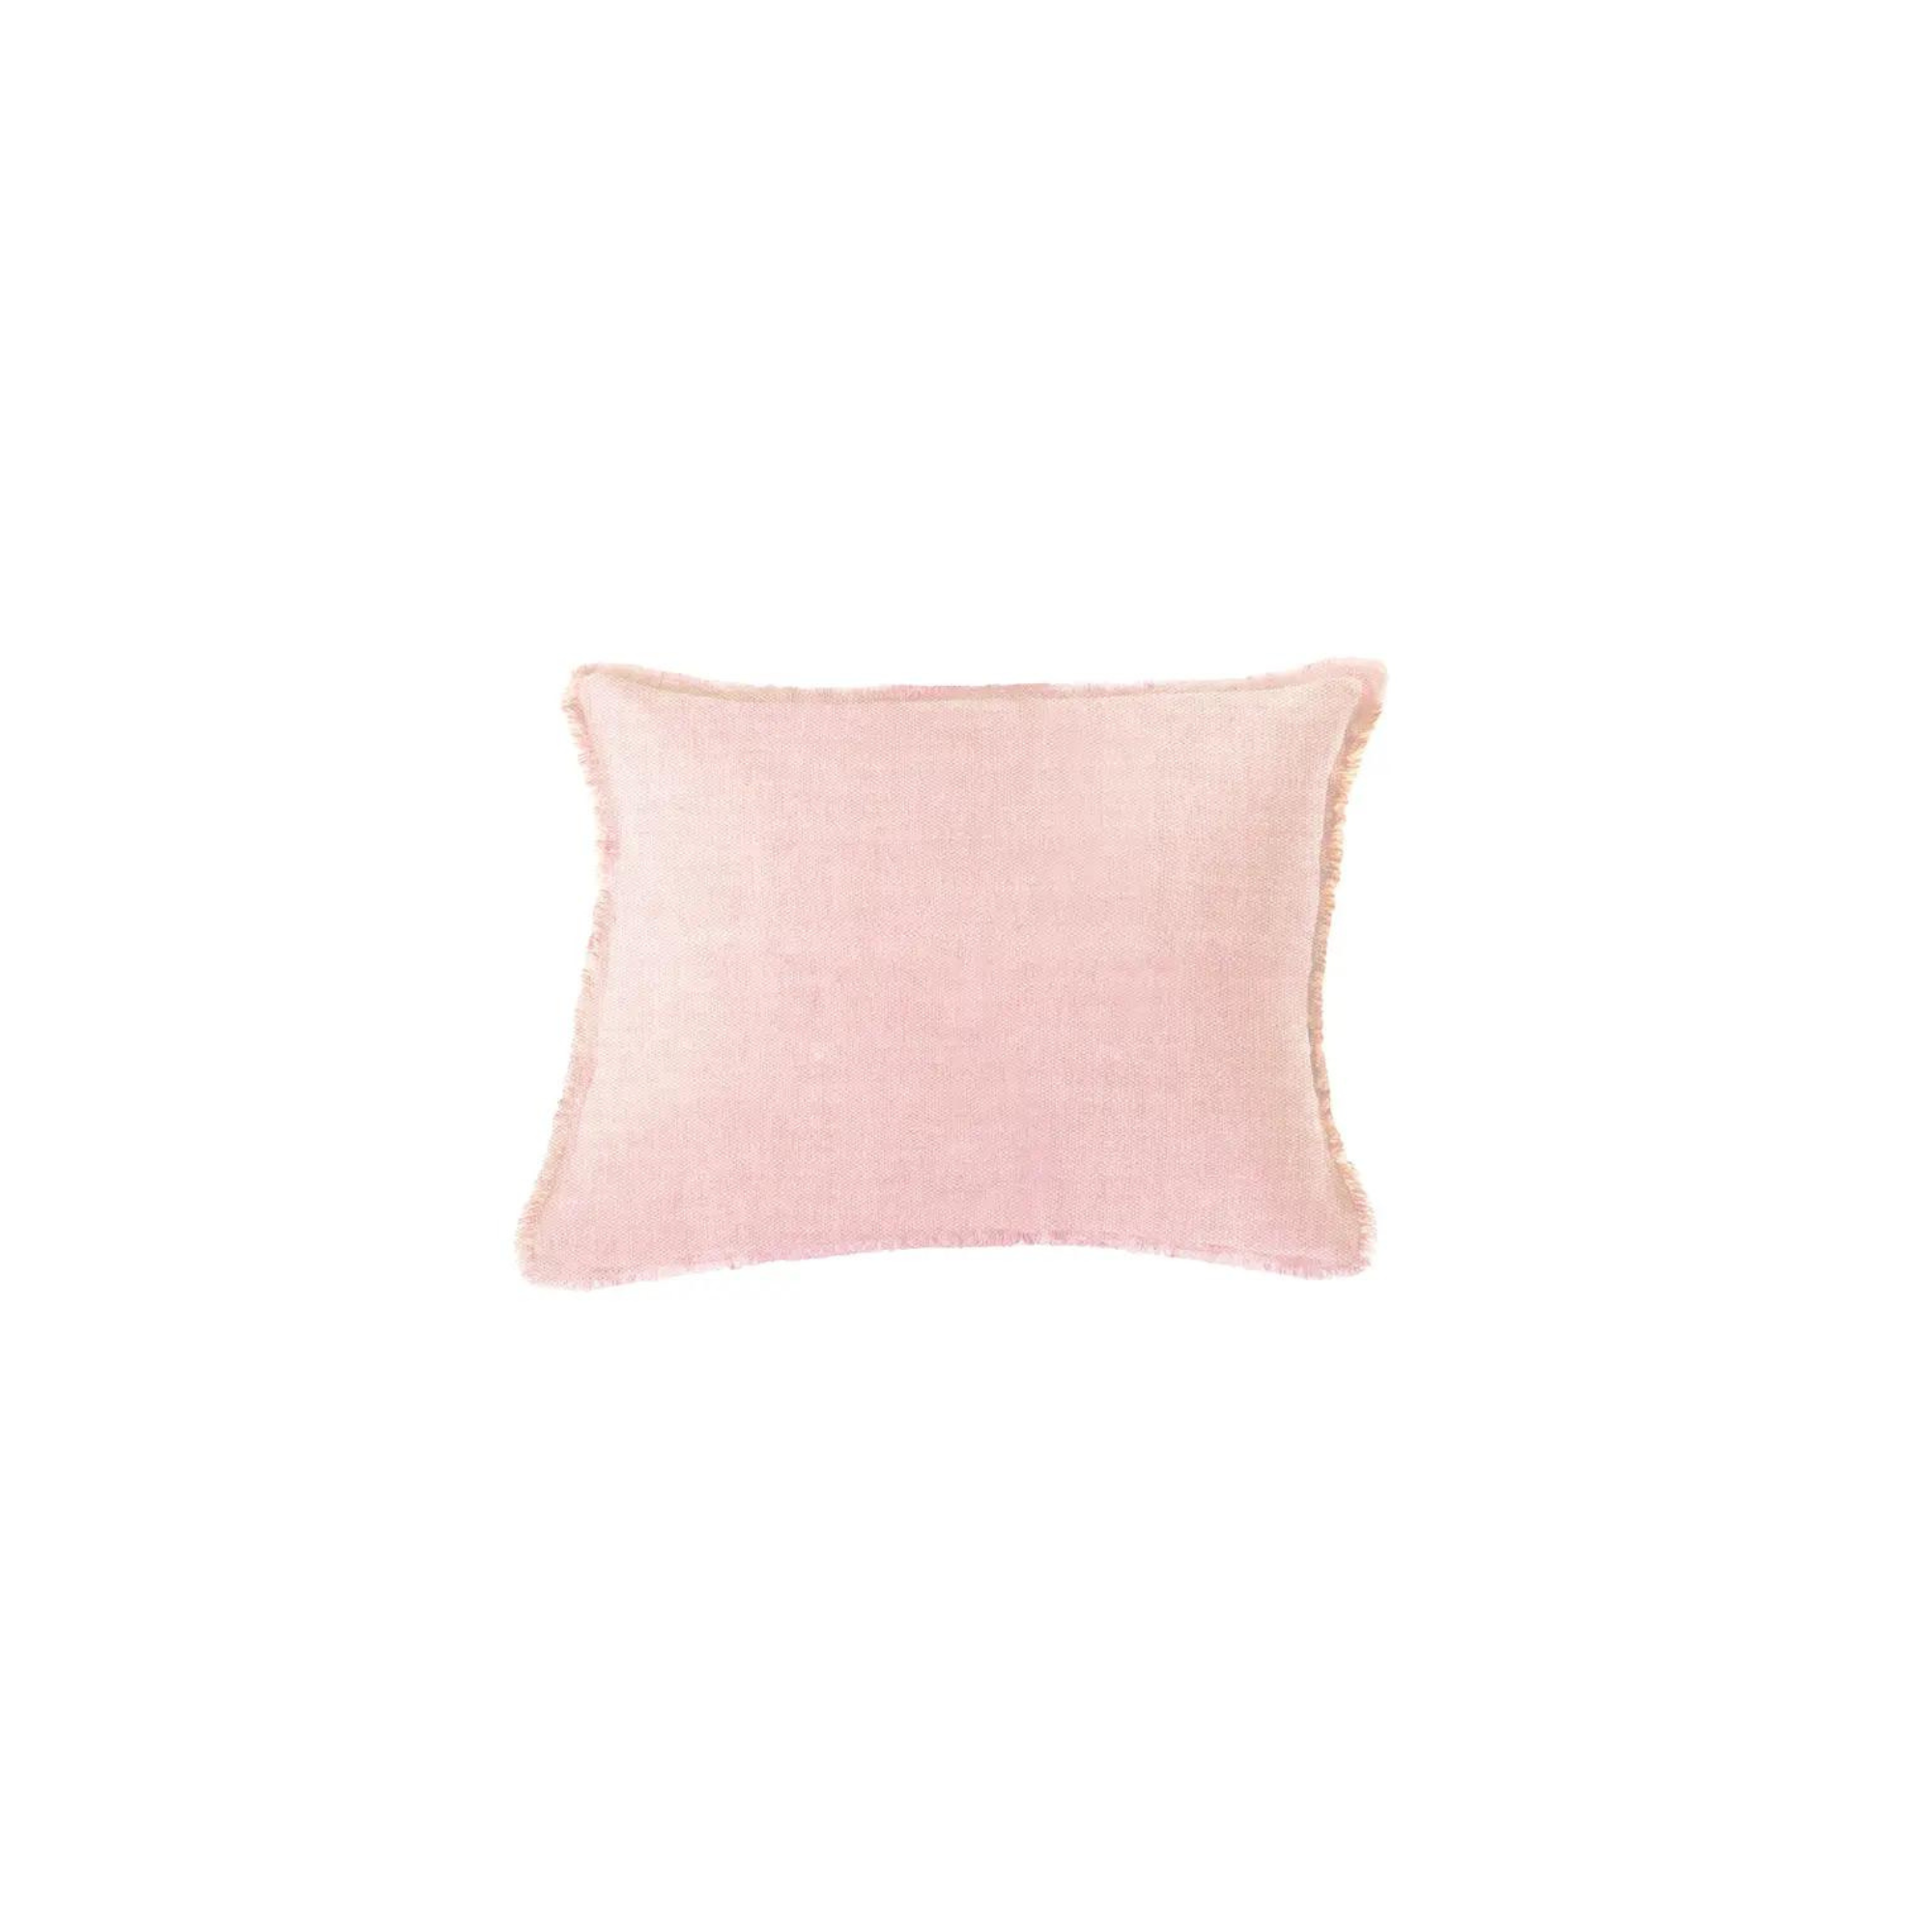 Light Pink Linen Pillows